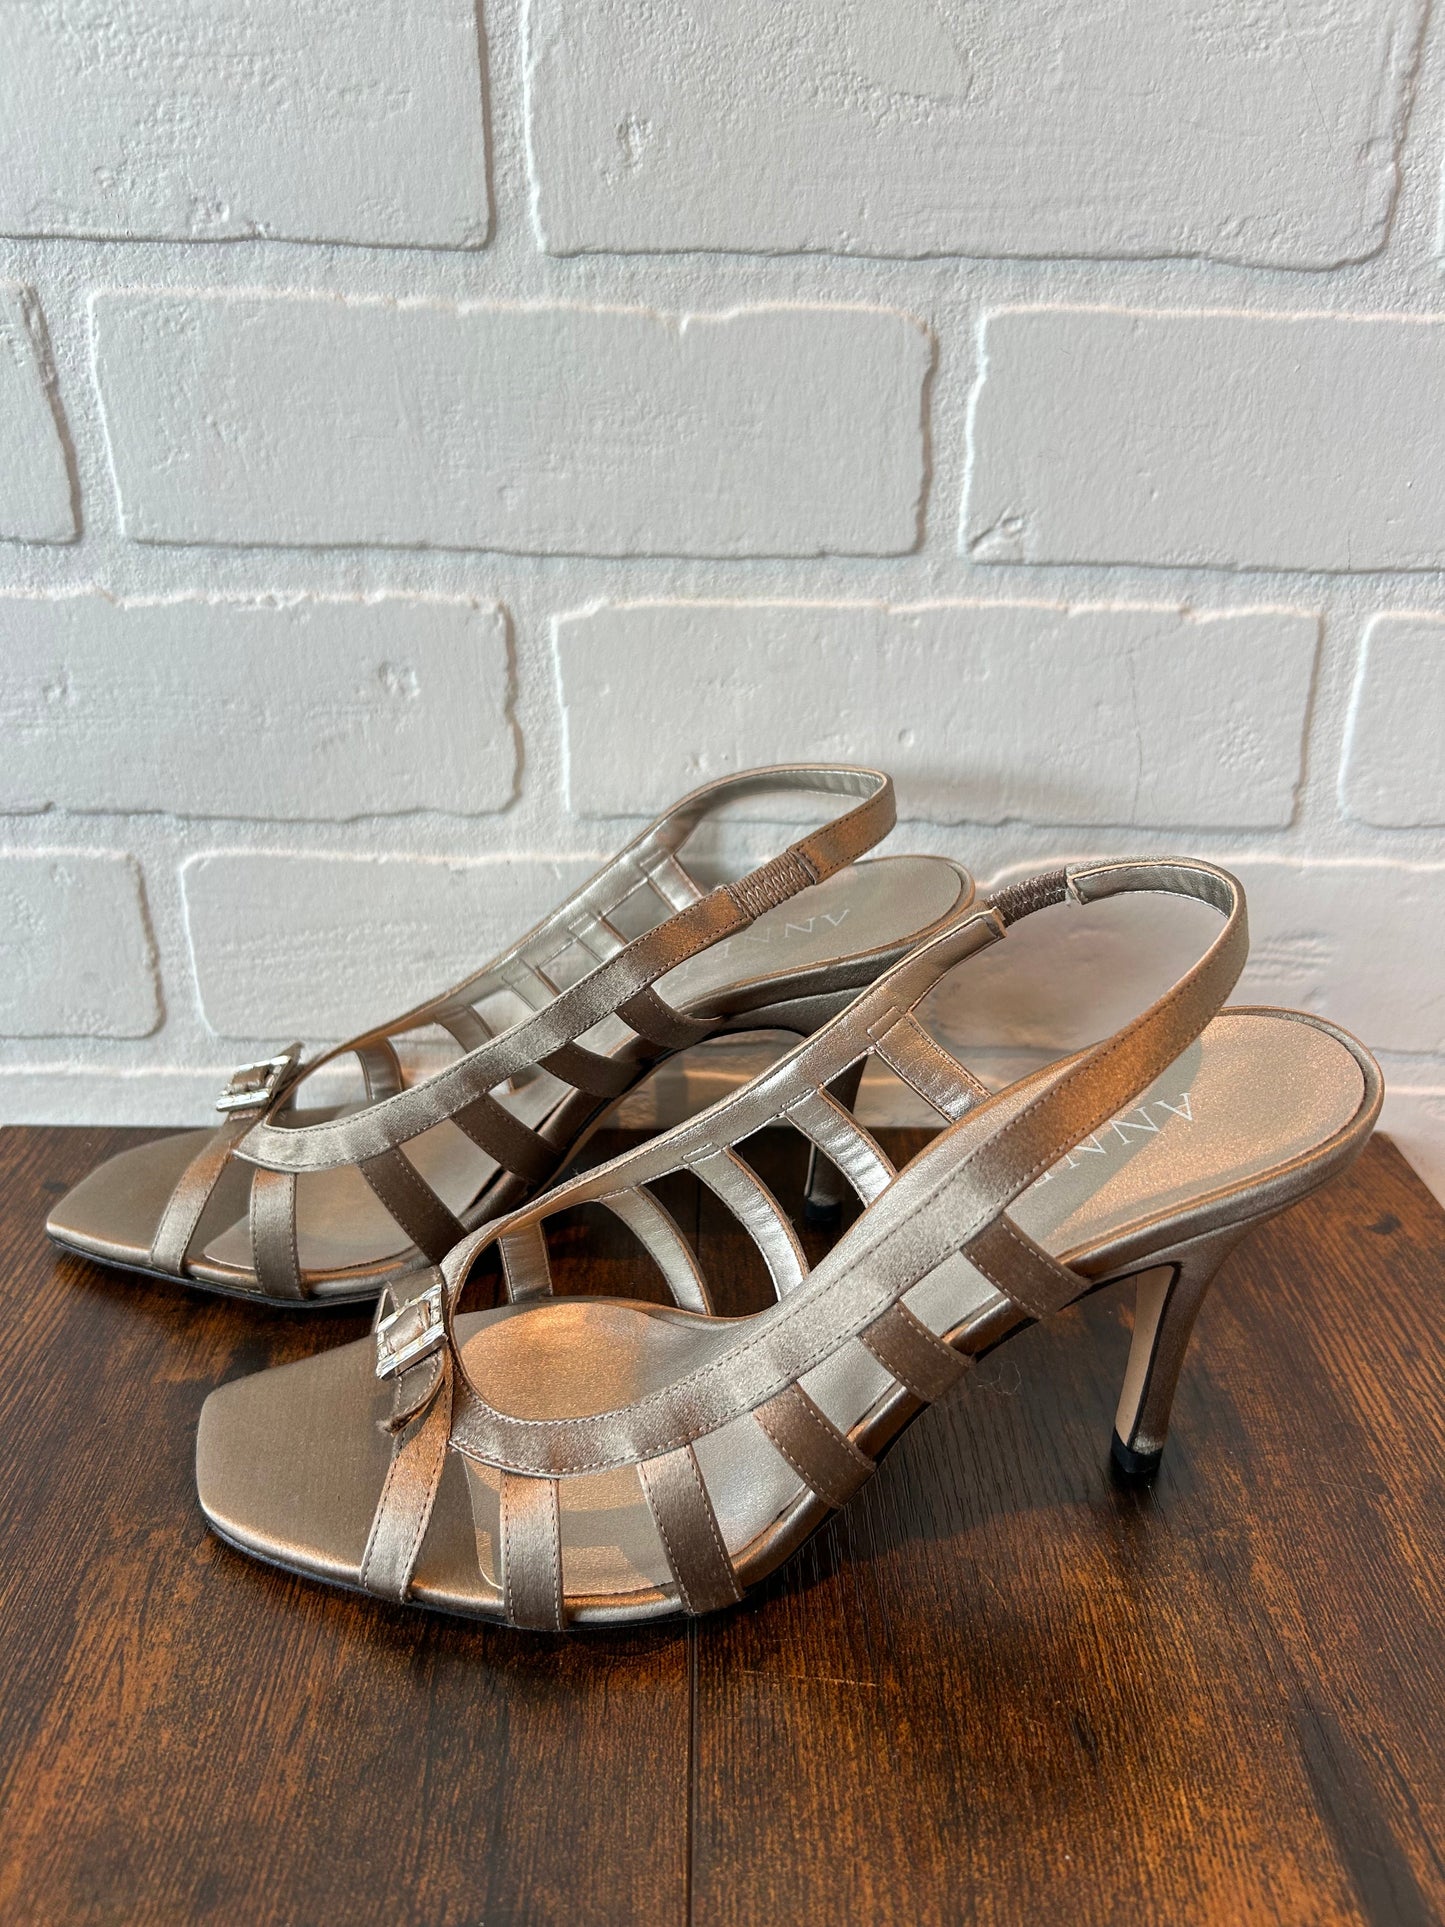 Sandals Heels Stiletto By Anne Klein  Size: 8